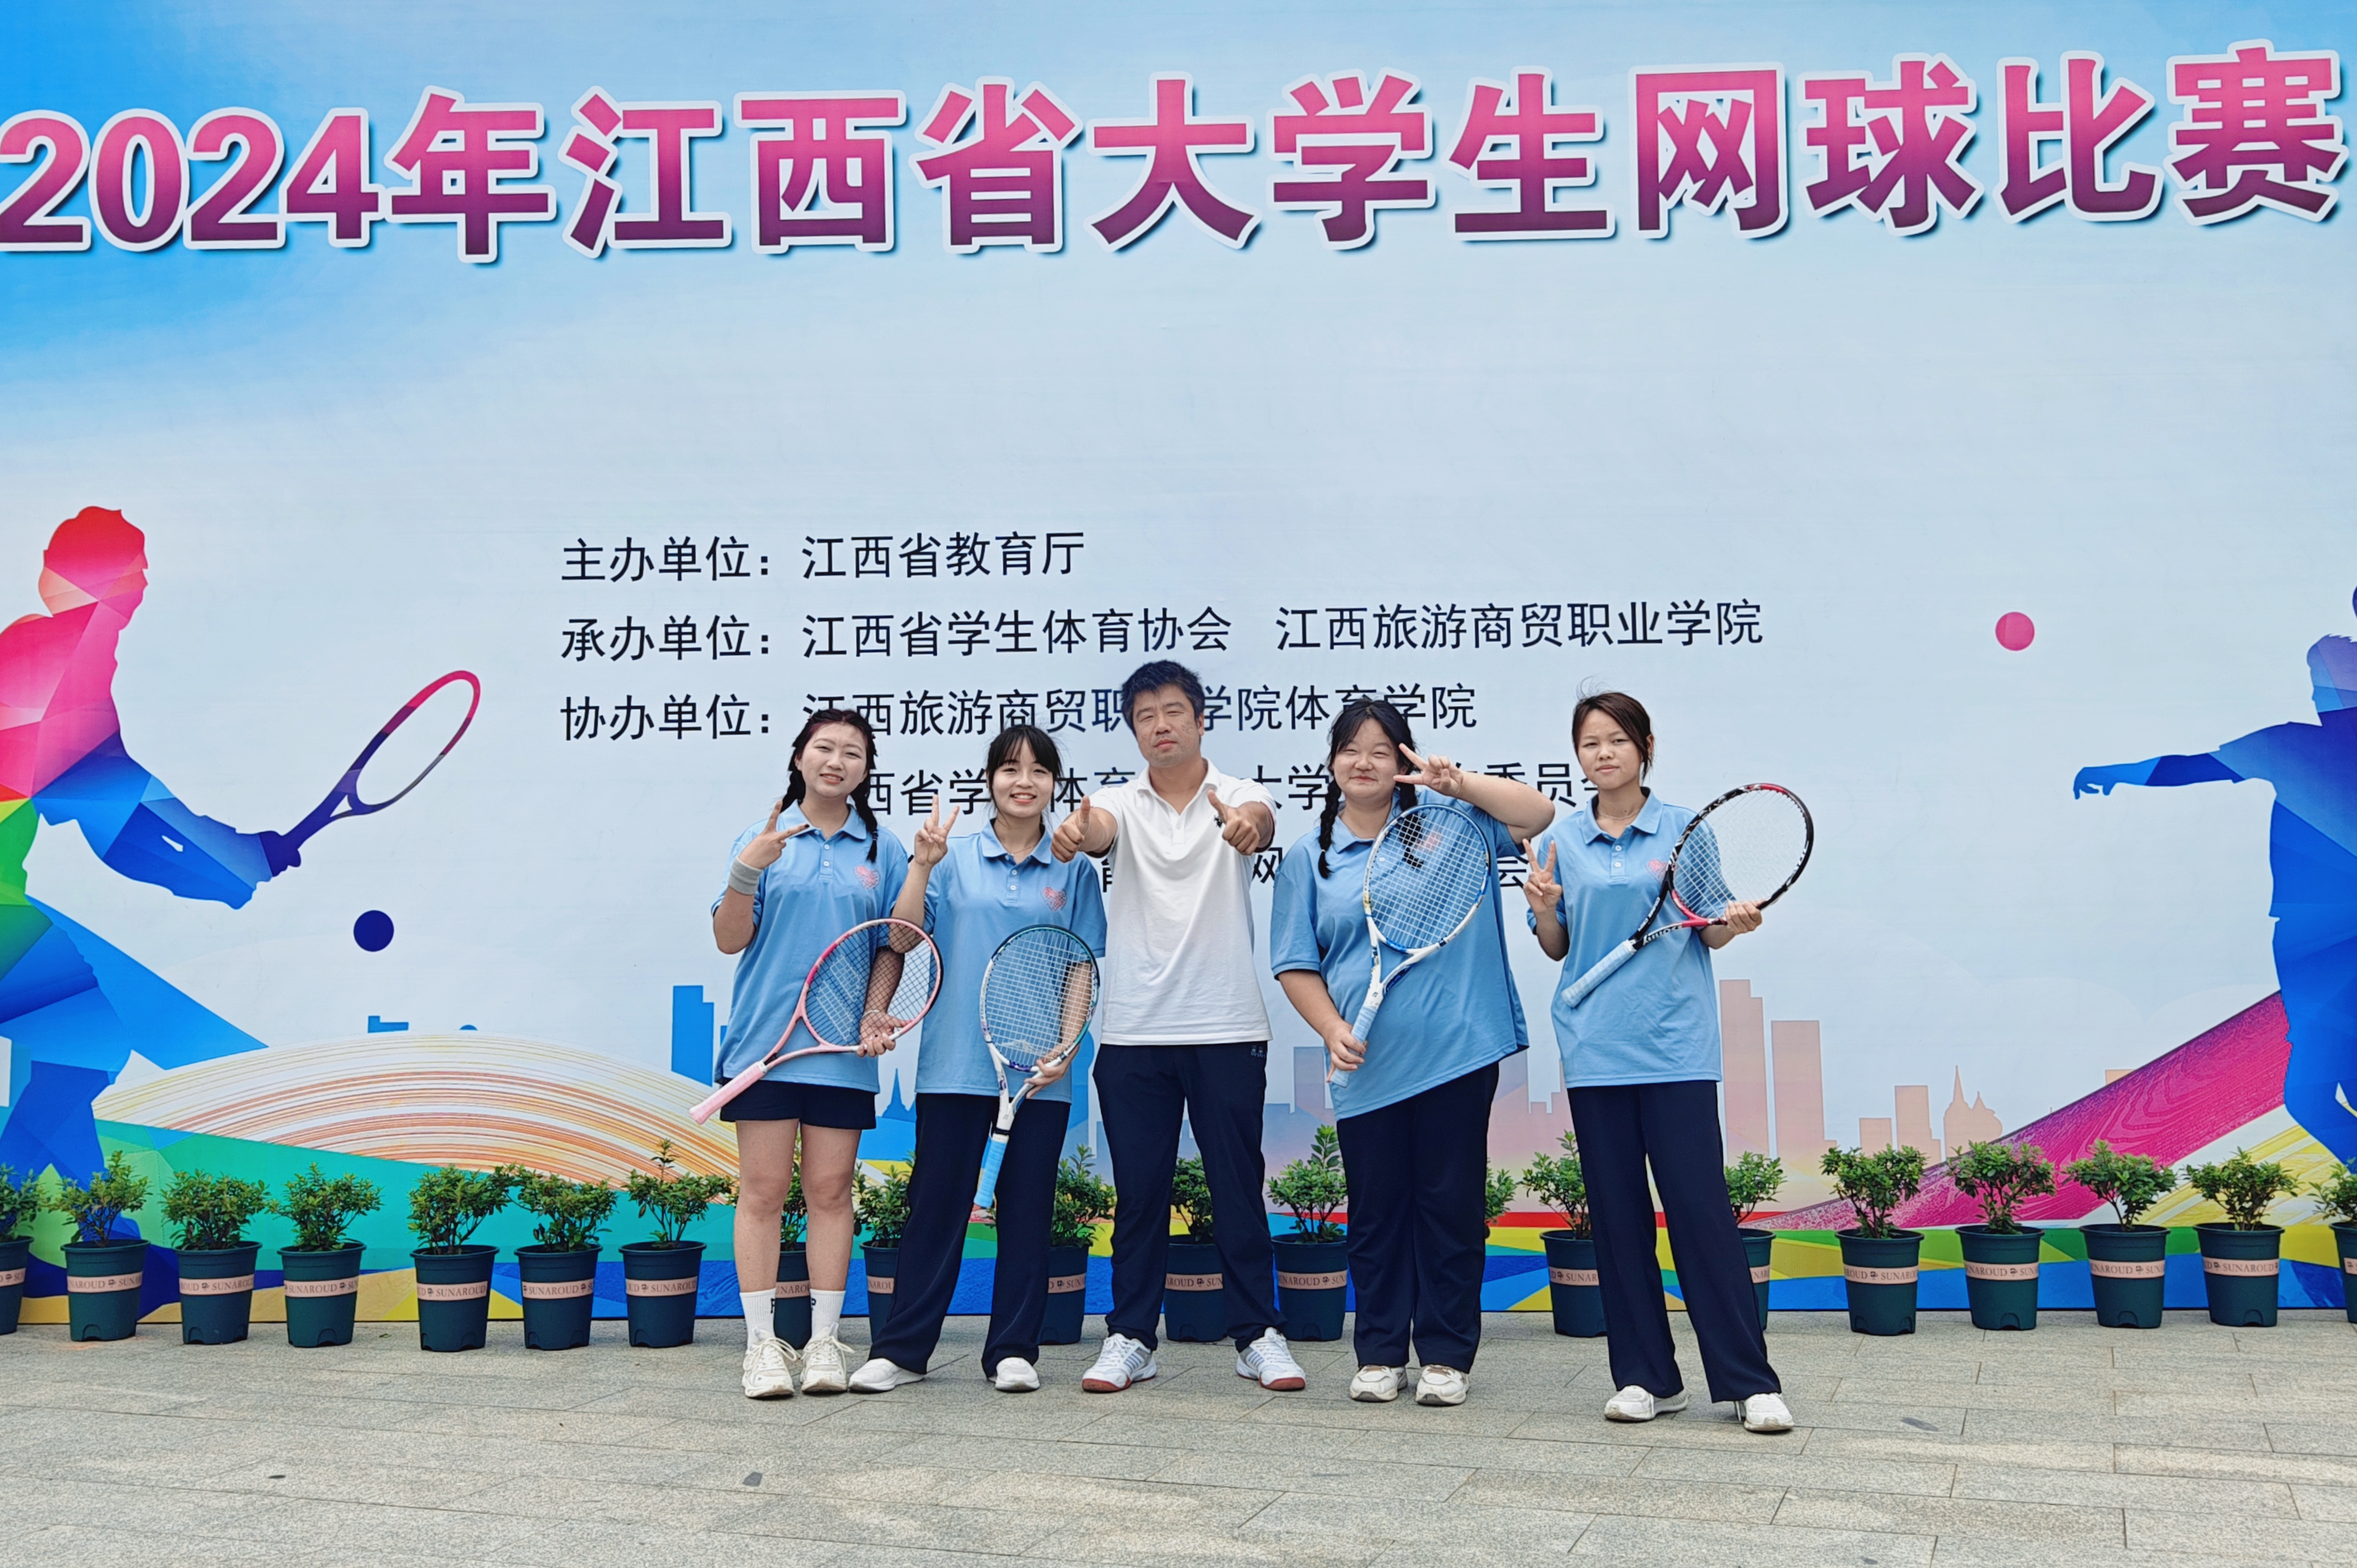 江西泰豪动漫职业学院网球队在2024年江西省大学生网球比赛中获佳绩